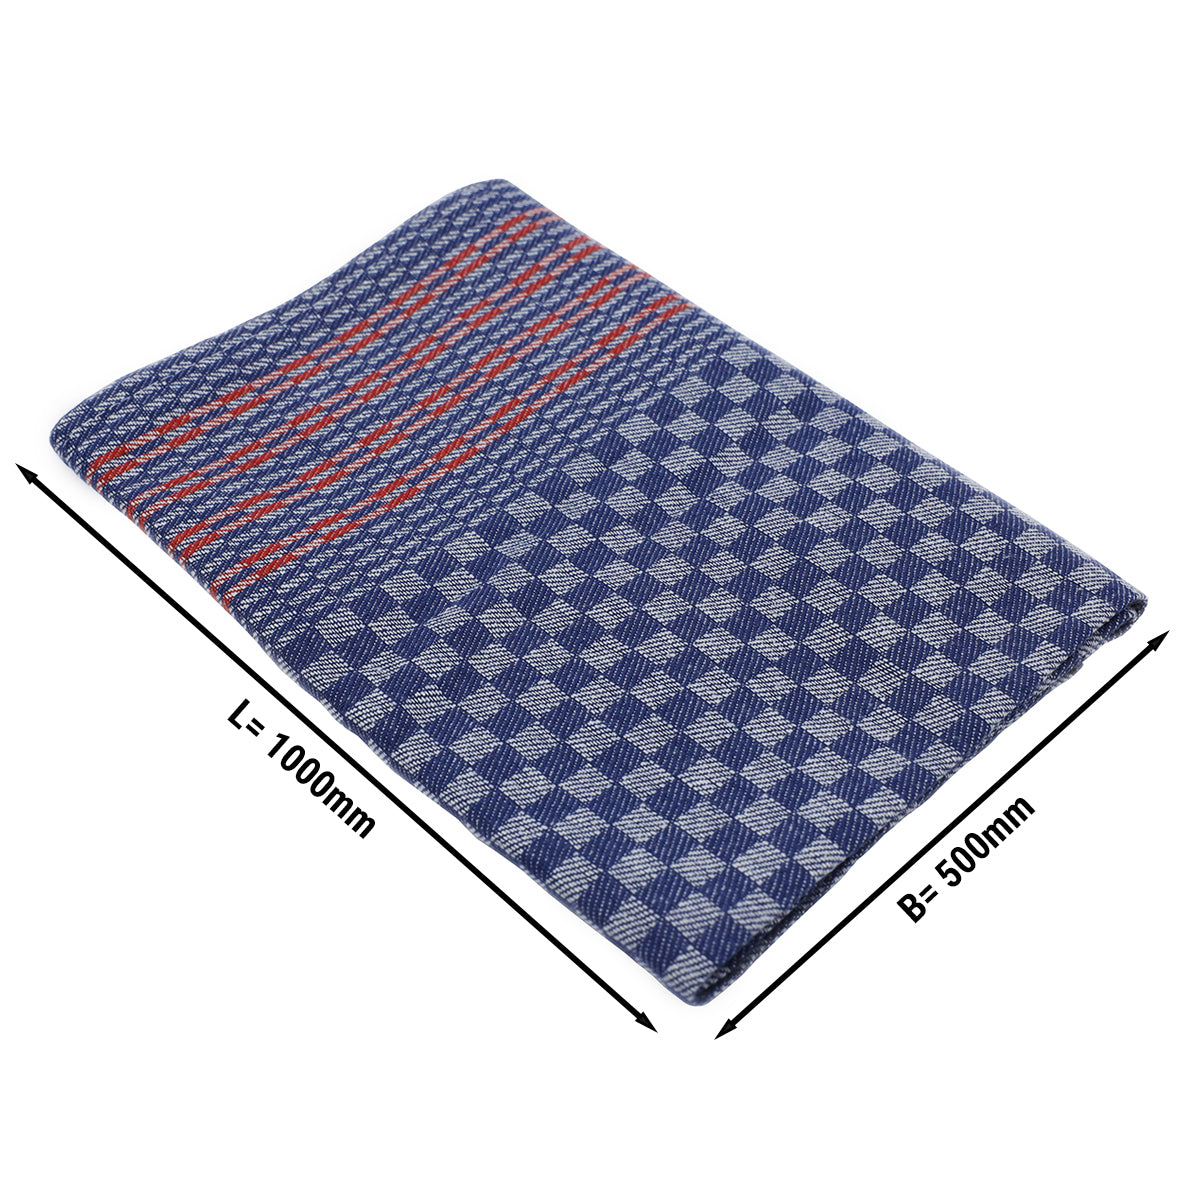 (10 stk) Håndklæde i halvlinned - 50 x 100 cm - blåternet med røde striber